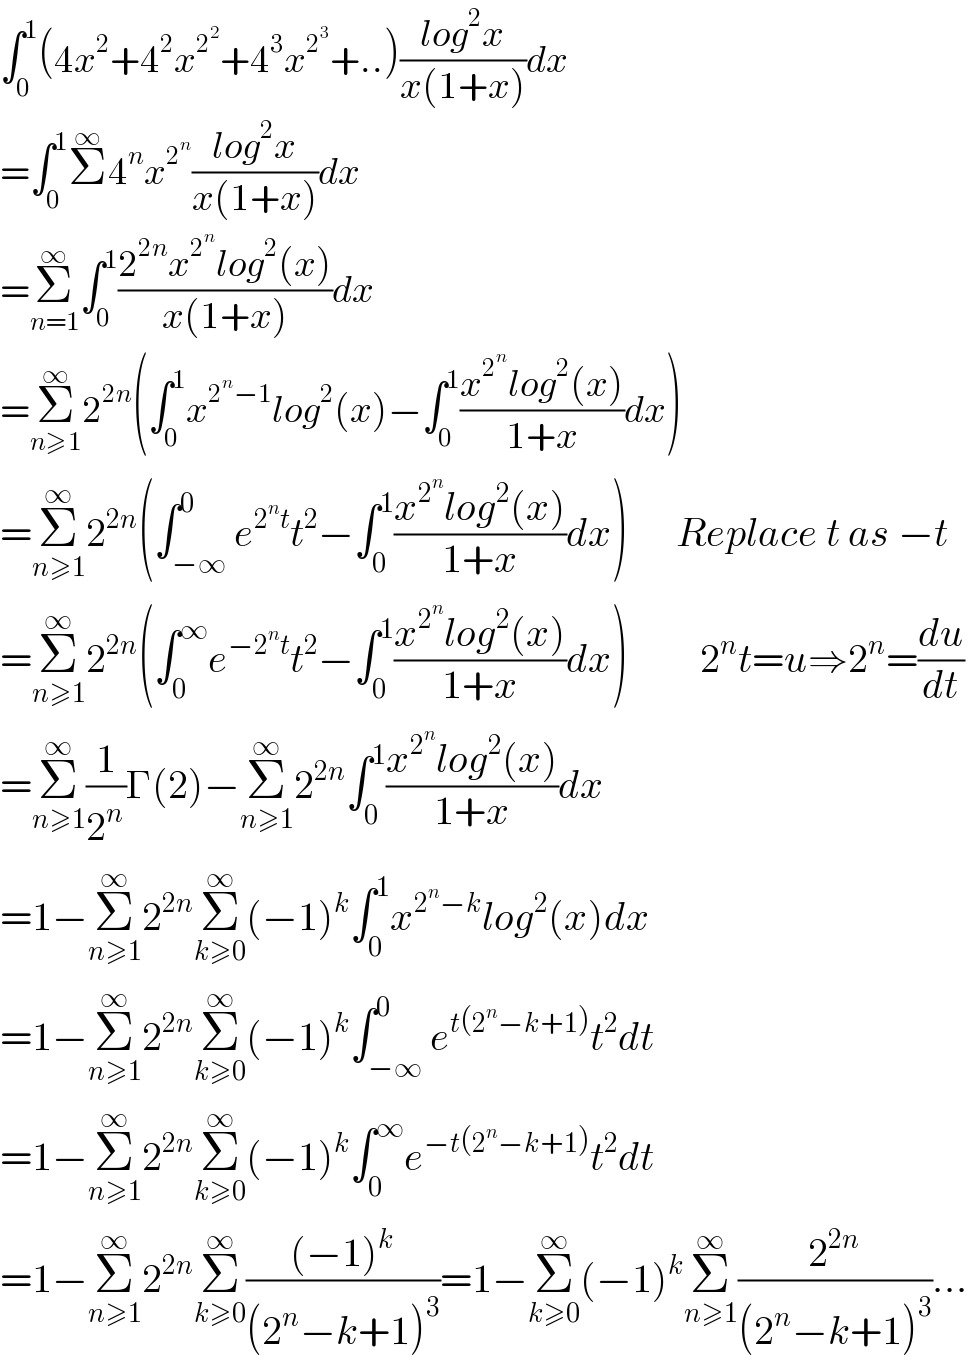 ∫_0 ^1 (4x^2 +4^2 x^2^2  +4^3 x^2^3  +..)((log^2 x)/(x(1+x)))dx  =∫_0 ^1 Σ^∞ 4^n x^2^n  ((log^2 x)/(x(1+x)))dx  =Σ_(n=1) ^∞ ∫_0 ^1 ((2^(2n) x^2^n  log^2 (x))/(x(1+x)))dx  =Σ_(n≥1) ^∞ 2^(2n) (∫_0 ^1 x^(2^n −1) log^2 (x)−∫_0 ^1 ((x^2^n  log^2 (x))/(1+x))dx)  =Σ_(n≥1) ^∞ 2^(2n) (∫_(−∞) ^0 e^(2^n t) t^2 −∫_0 ^1 ((x^2^n  log^2 (x))/(1+x))dx)      Replace t as −t  =Σ_(n≥1) ^∞ 2^(2n) (∫_0 ^∞ e^(−2^n t) t^2 −∫_0 ^1 ((x^2^n  log^2 (x))/(1+x))dx)         2^n t=u⇒2^n =(du/dt)  =Σ_(n≥1) ^∞ (1/2^n )Γ(2)−Σ_(n≥1) ^∞ 2^(2n) ∫_0 ^1 ((x^2^n  log^2 (x))/(1+x))dx  =1−Σ_(n≥1) ^∞ 2^(2n) Σ_(k≥0) ^∞ (−1)^k ∫_0 ^1 x^(2^n −k) log^2 (x)dx  =1−Σ_(n≥1) ^∞ 2^(2n) Σ_(k≥0) ^∞ (−1)^k ∫_(−∞) ^0 e^(t(2^n −k+1)) t^2 dt  =1−Σ_(n≥1) ^∞ 2^(2n) Σ_(k≥0) ^∞ (−1)^k ∫_0 ^∞ e^(−t(2^n −k+1)) t^2 dt  =1−Σ_(n≥1) ^∞ 2^(2n) Σ_(k≥0) ^∞ (((−1)^k )/((2^n −k+1)^3 ))=1−Σ_(k≥0) ^∞ (−1)^k Σ_(n≥1) ^∞ (2^(2n) /((2^n −k+1)^3 ))...  